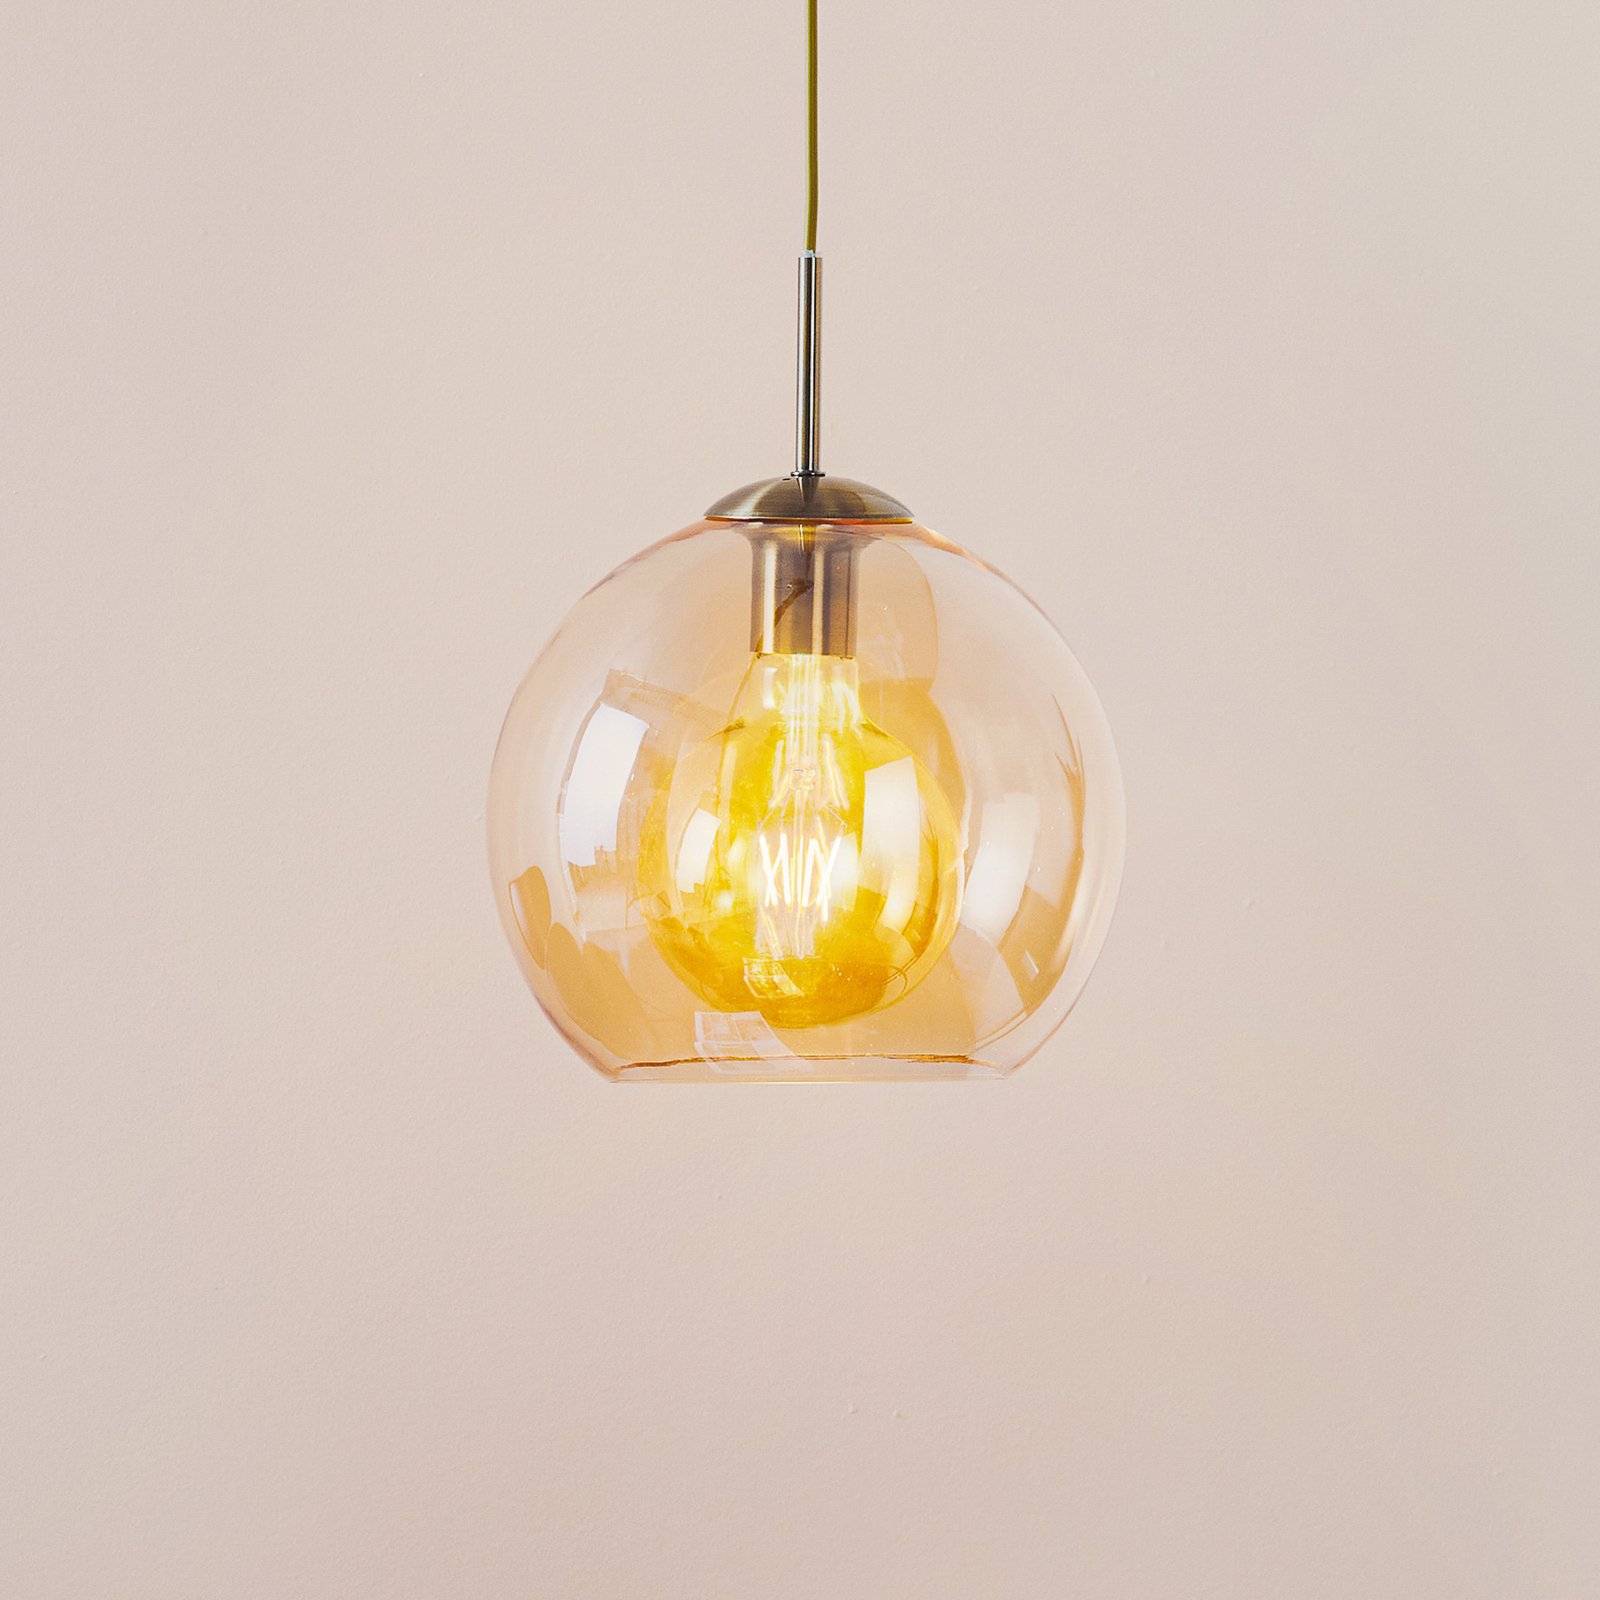 Lampa wisząca Balls z kulą kolor bursztynu 25 cm